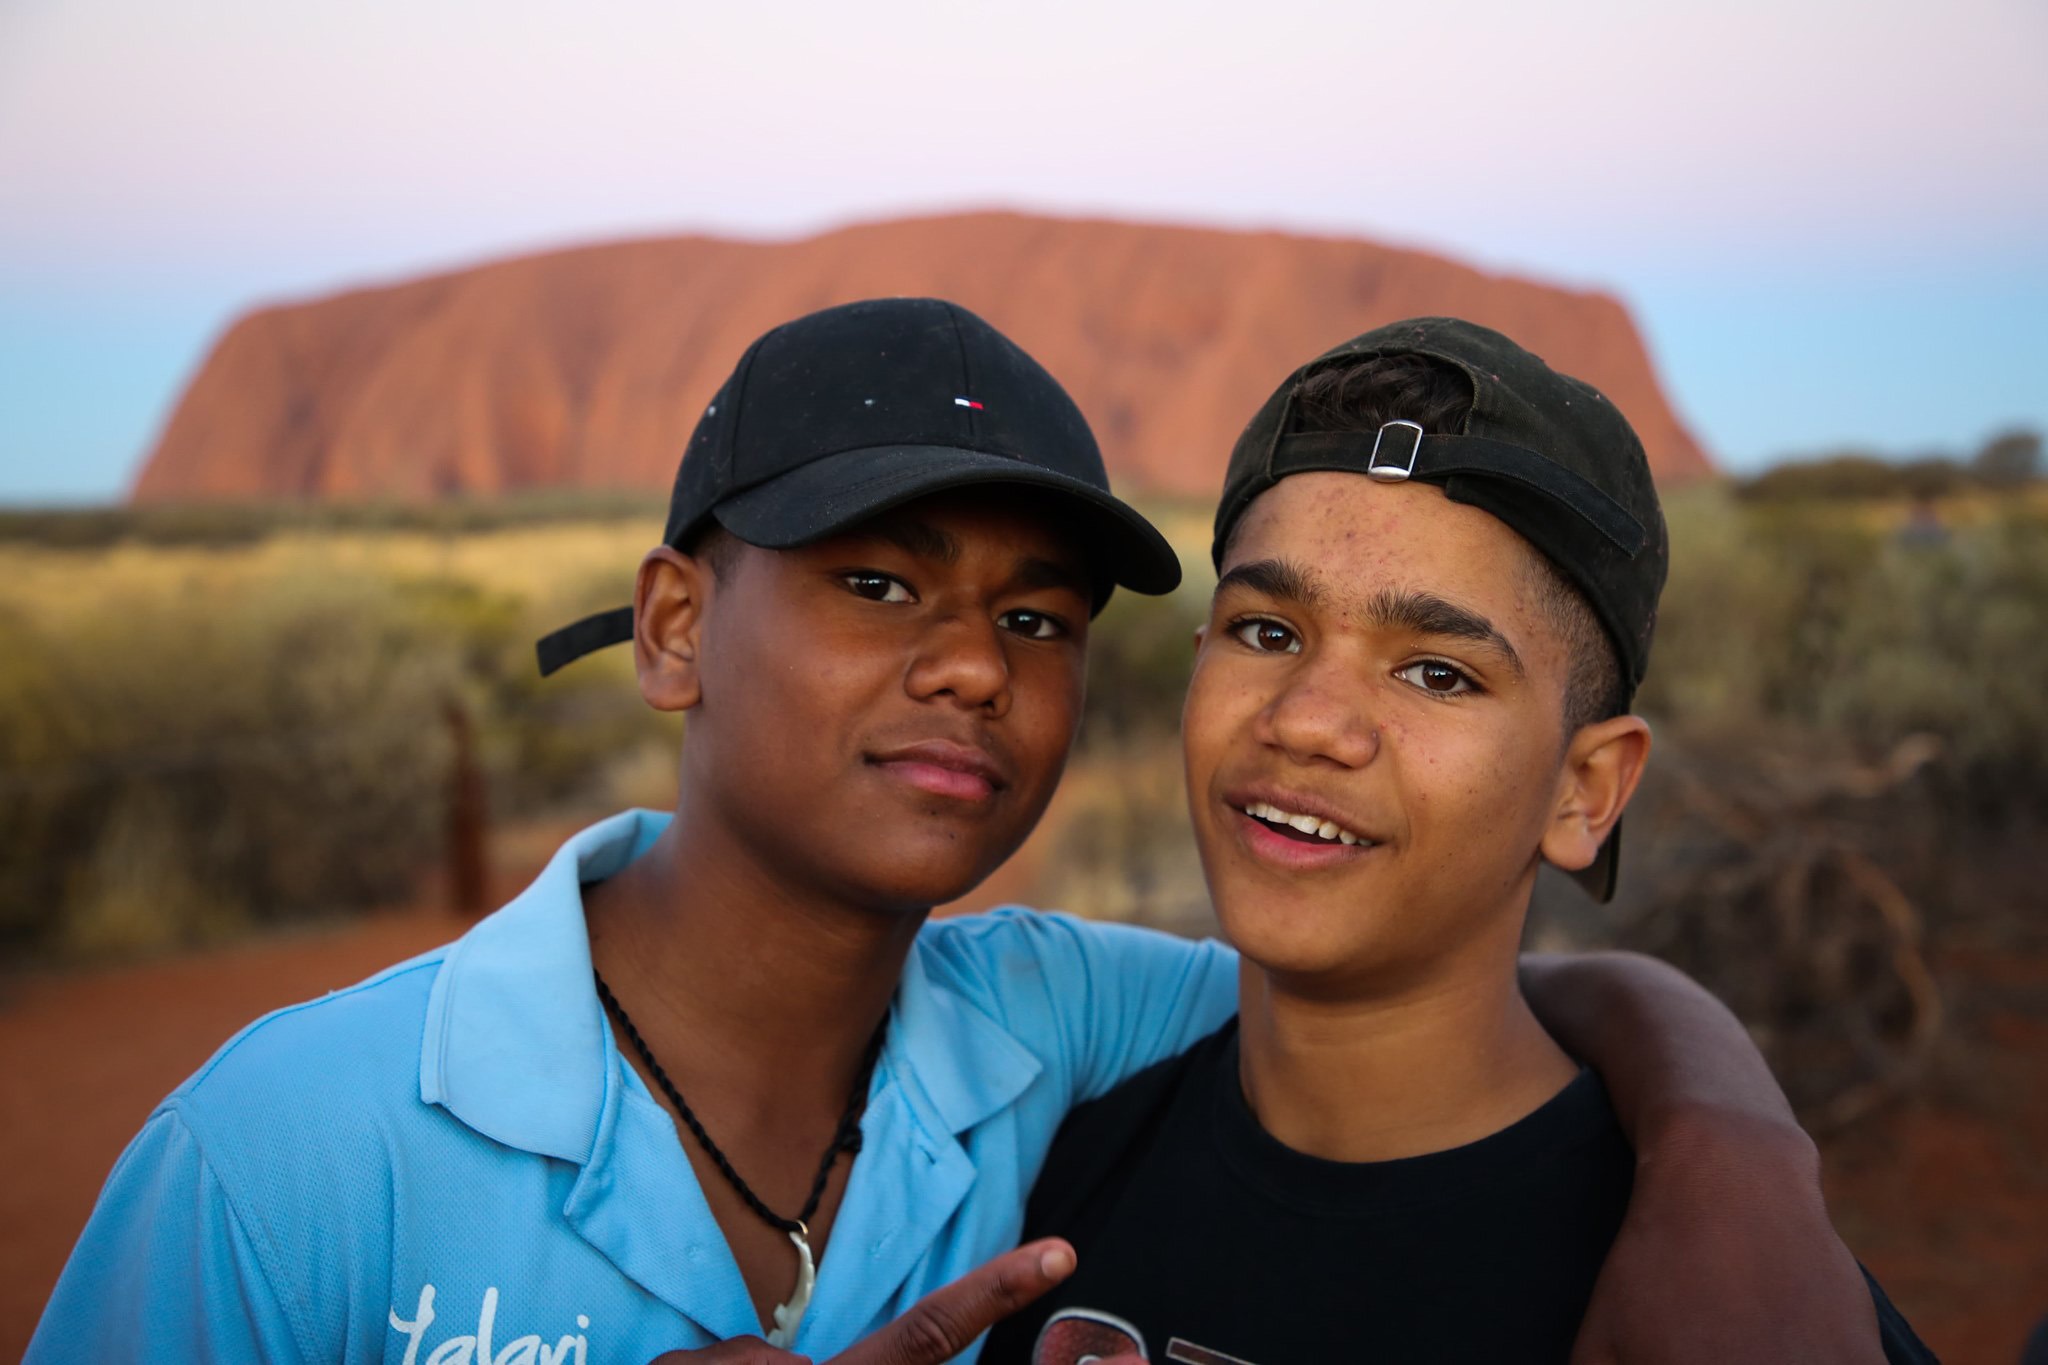 Yalari Students at Uluru